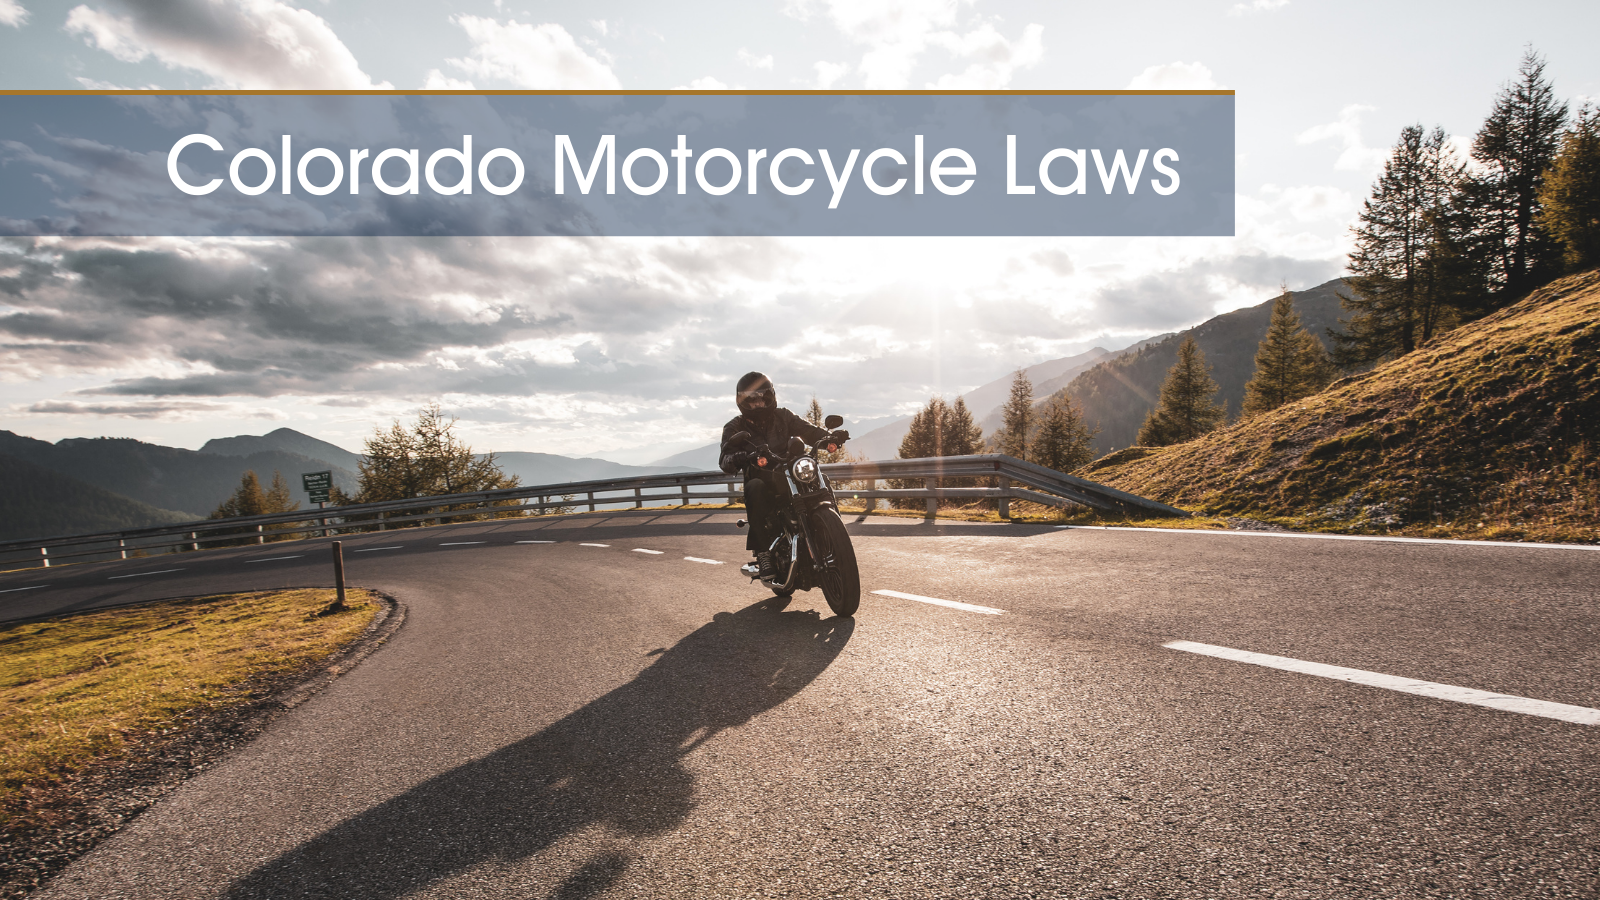  Colorado Motorcycle Laws